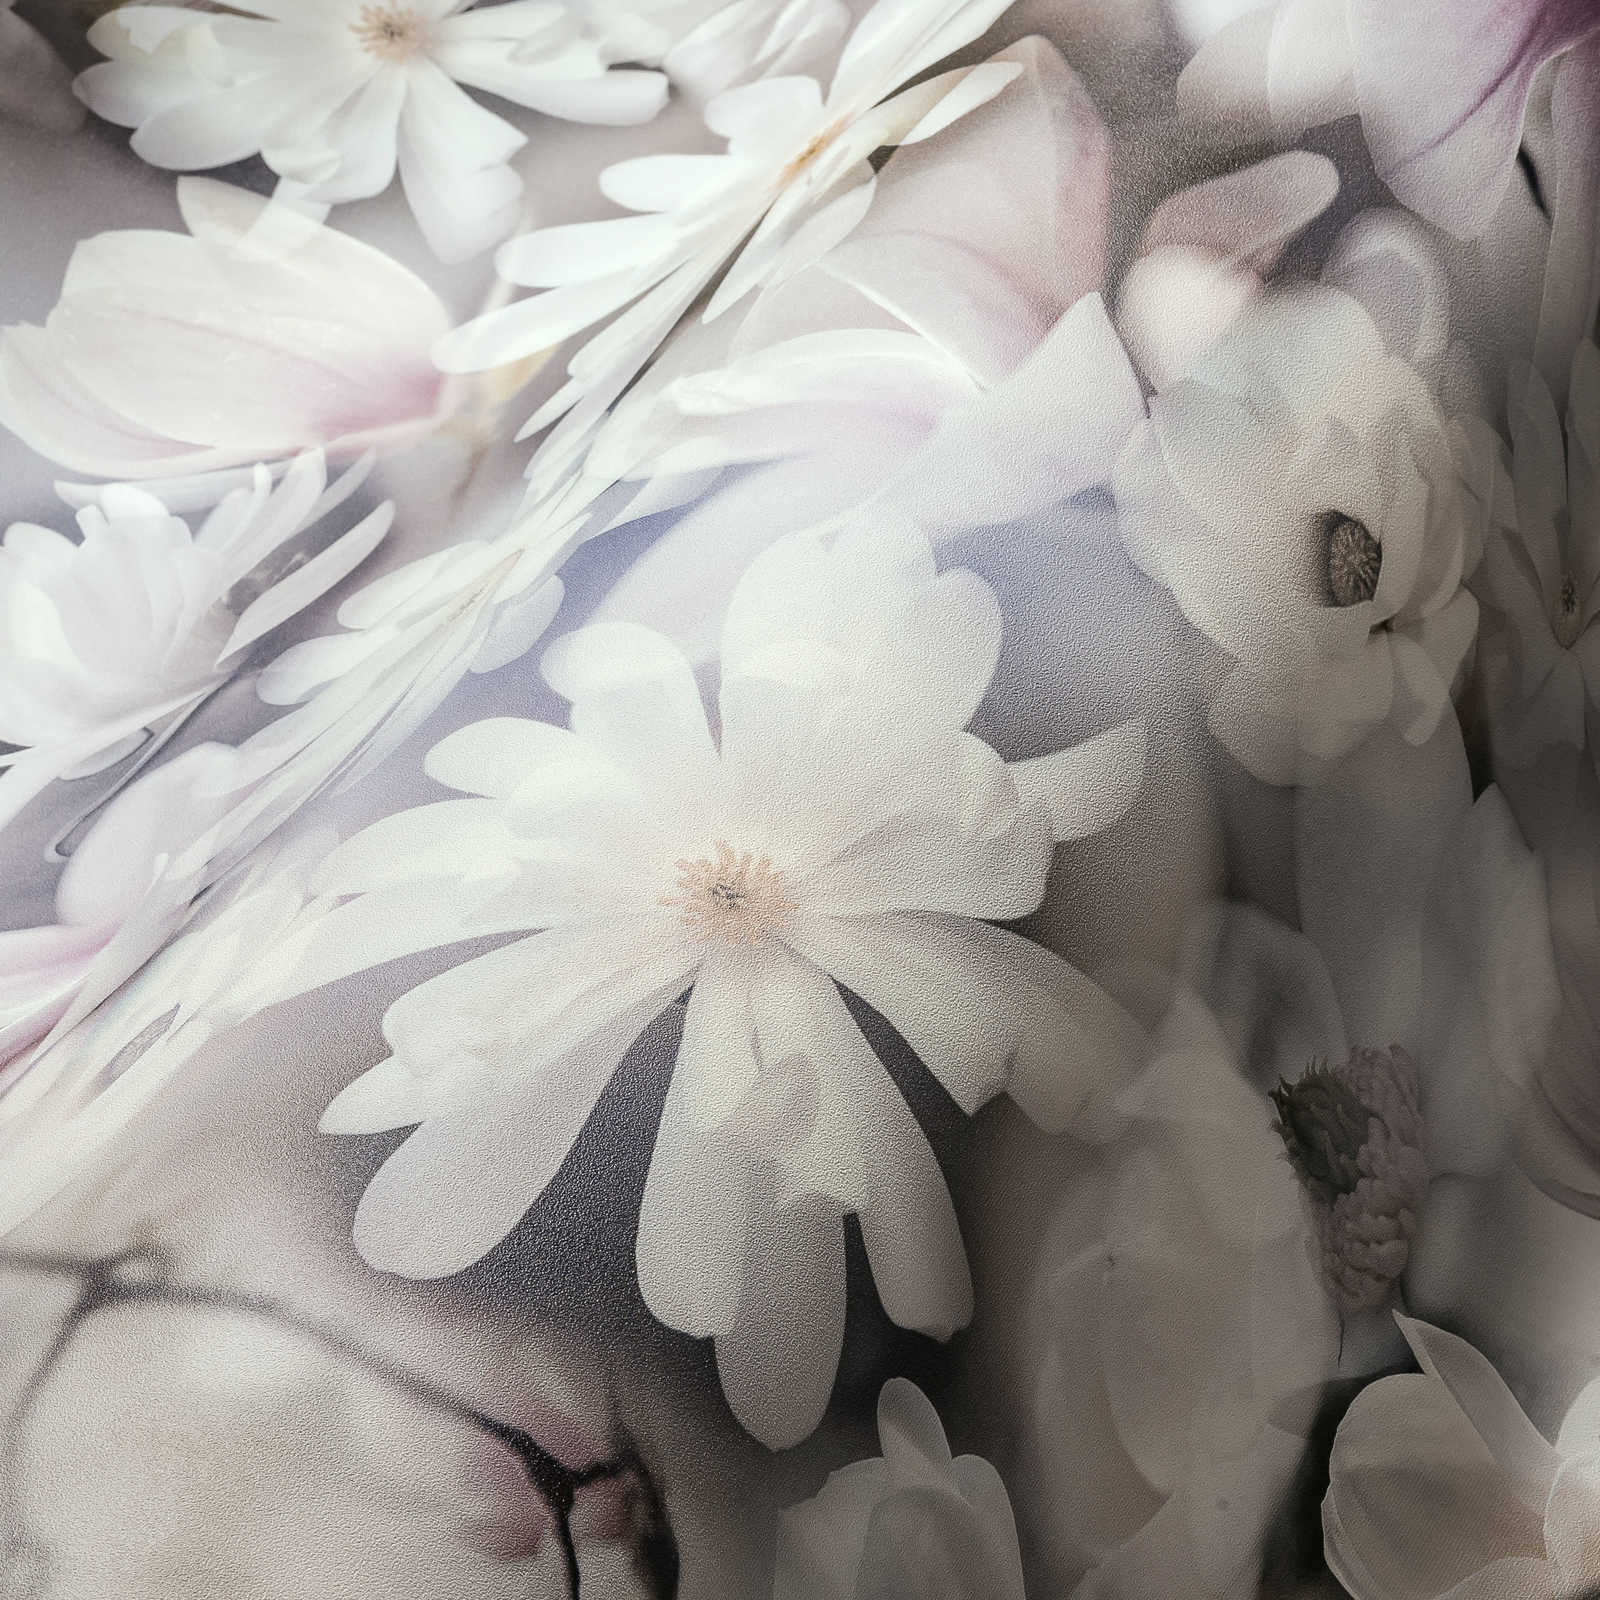             Behang bloemen collage in lichte kleuren - grijs, wit
        